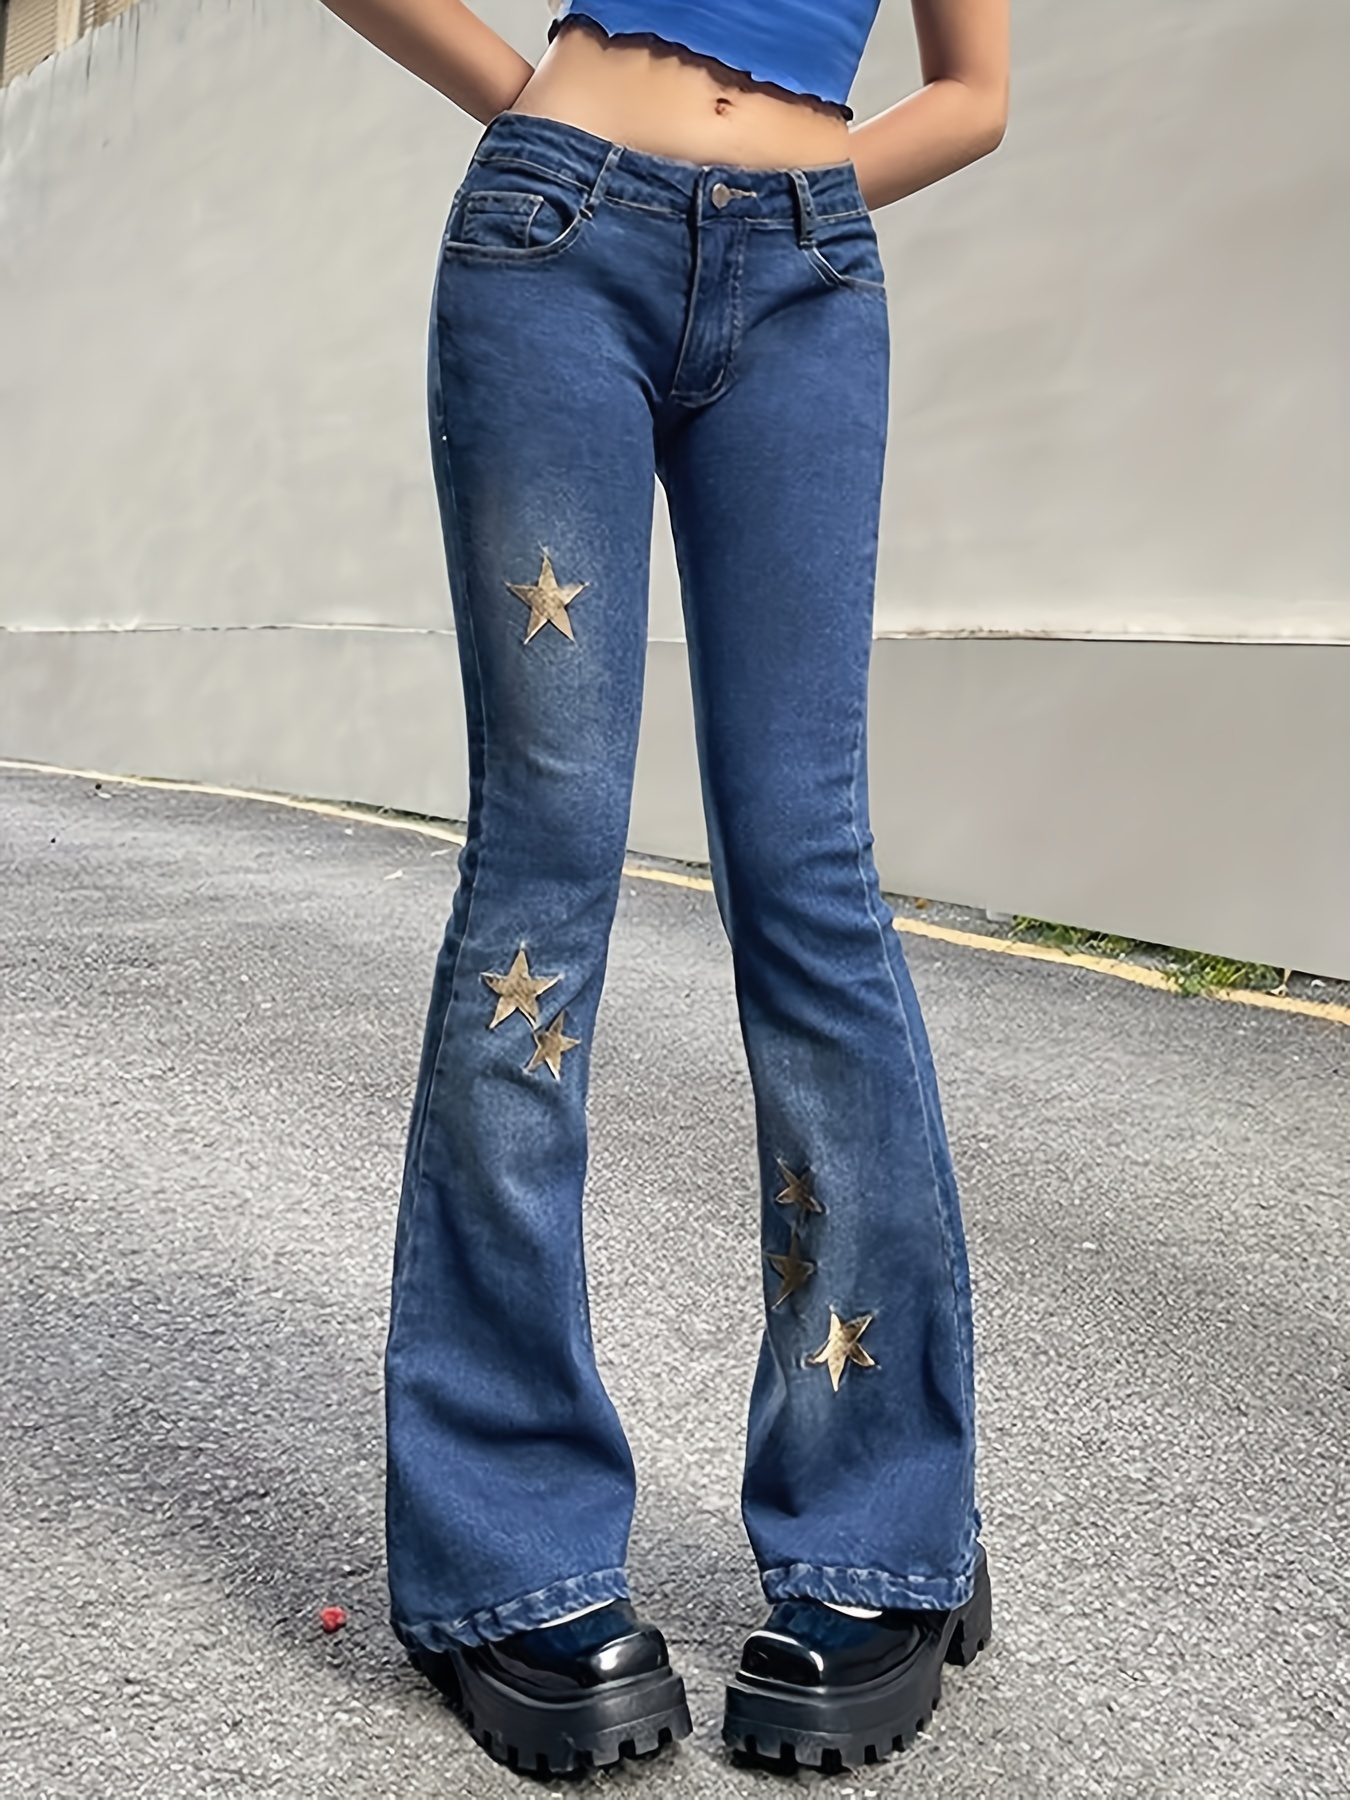 Red Star Flare Jeans Firecracker High Waist Denim Bell Bottom